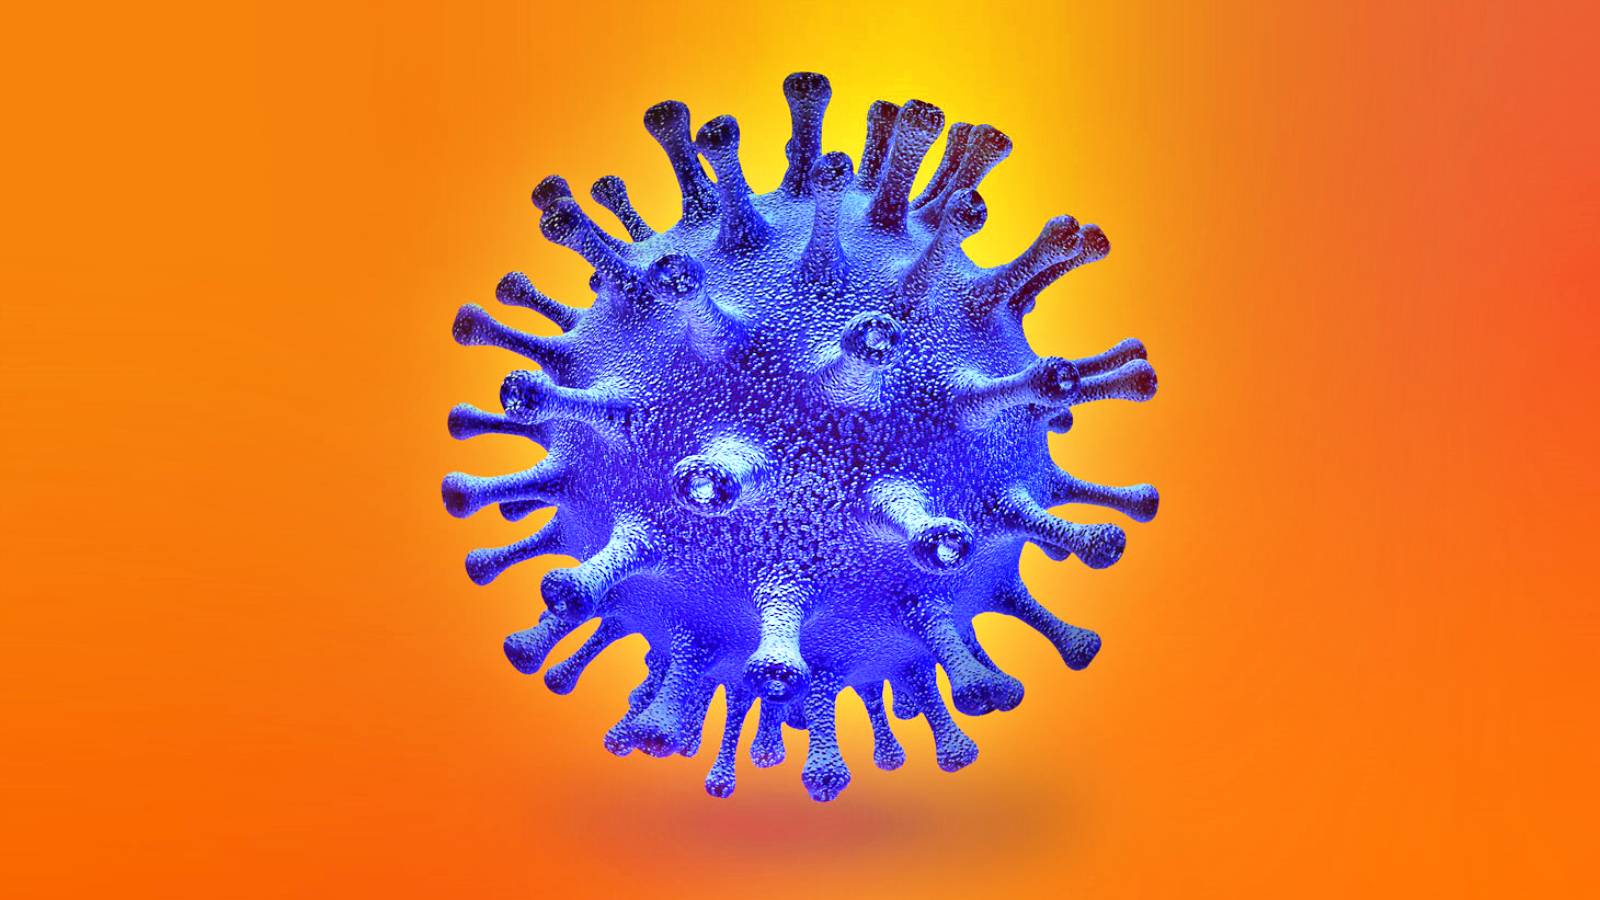 Il vaccino contro il coronavirus vince i premi della lotteria rumena